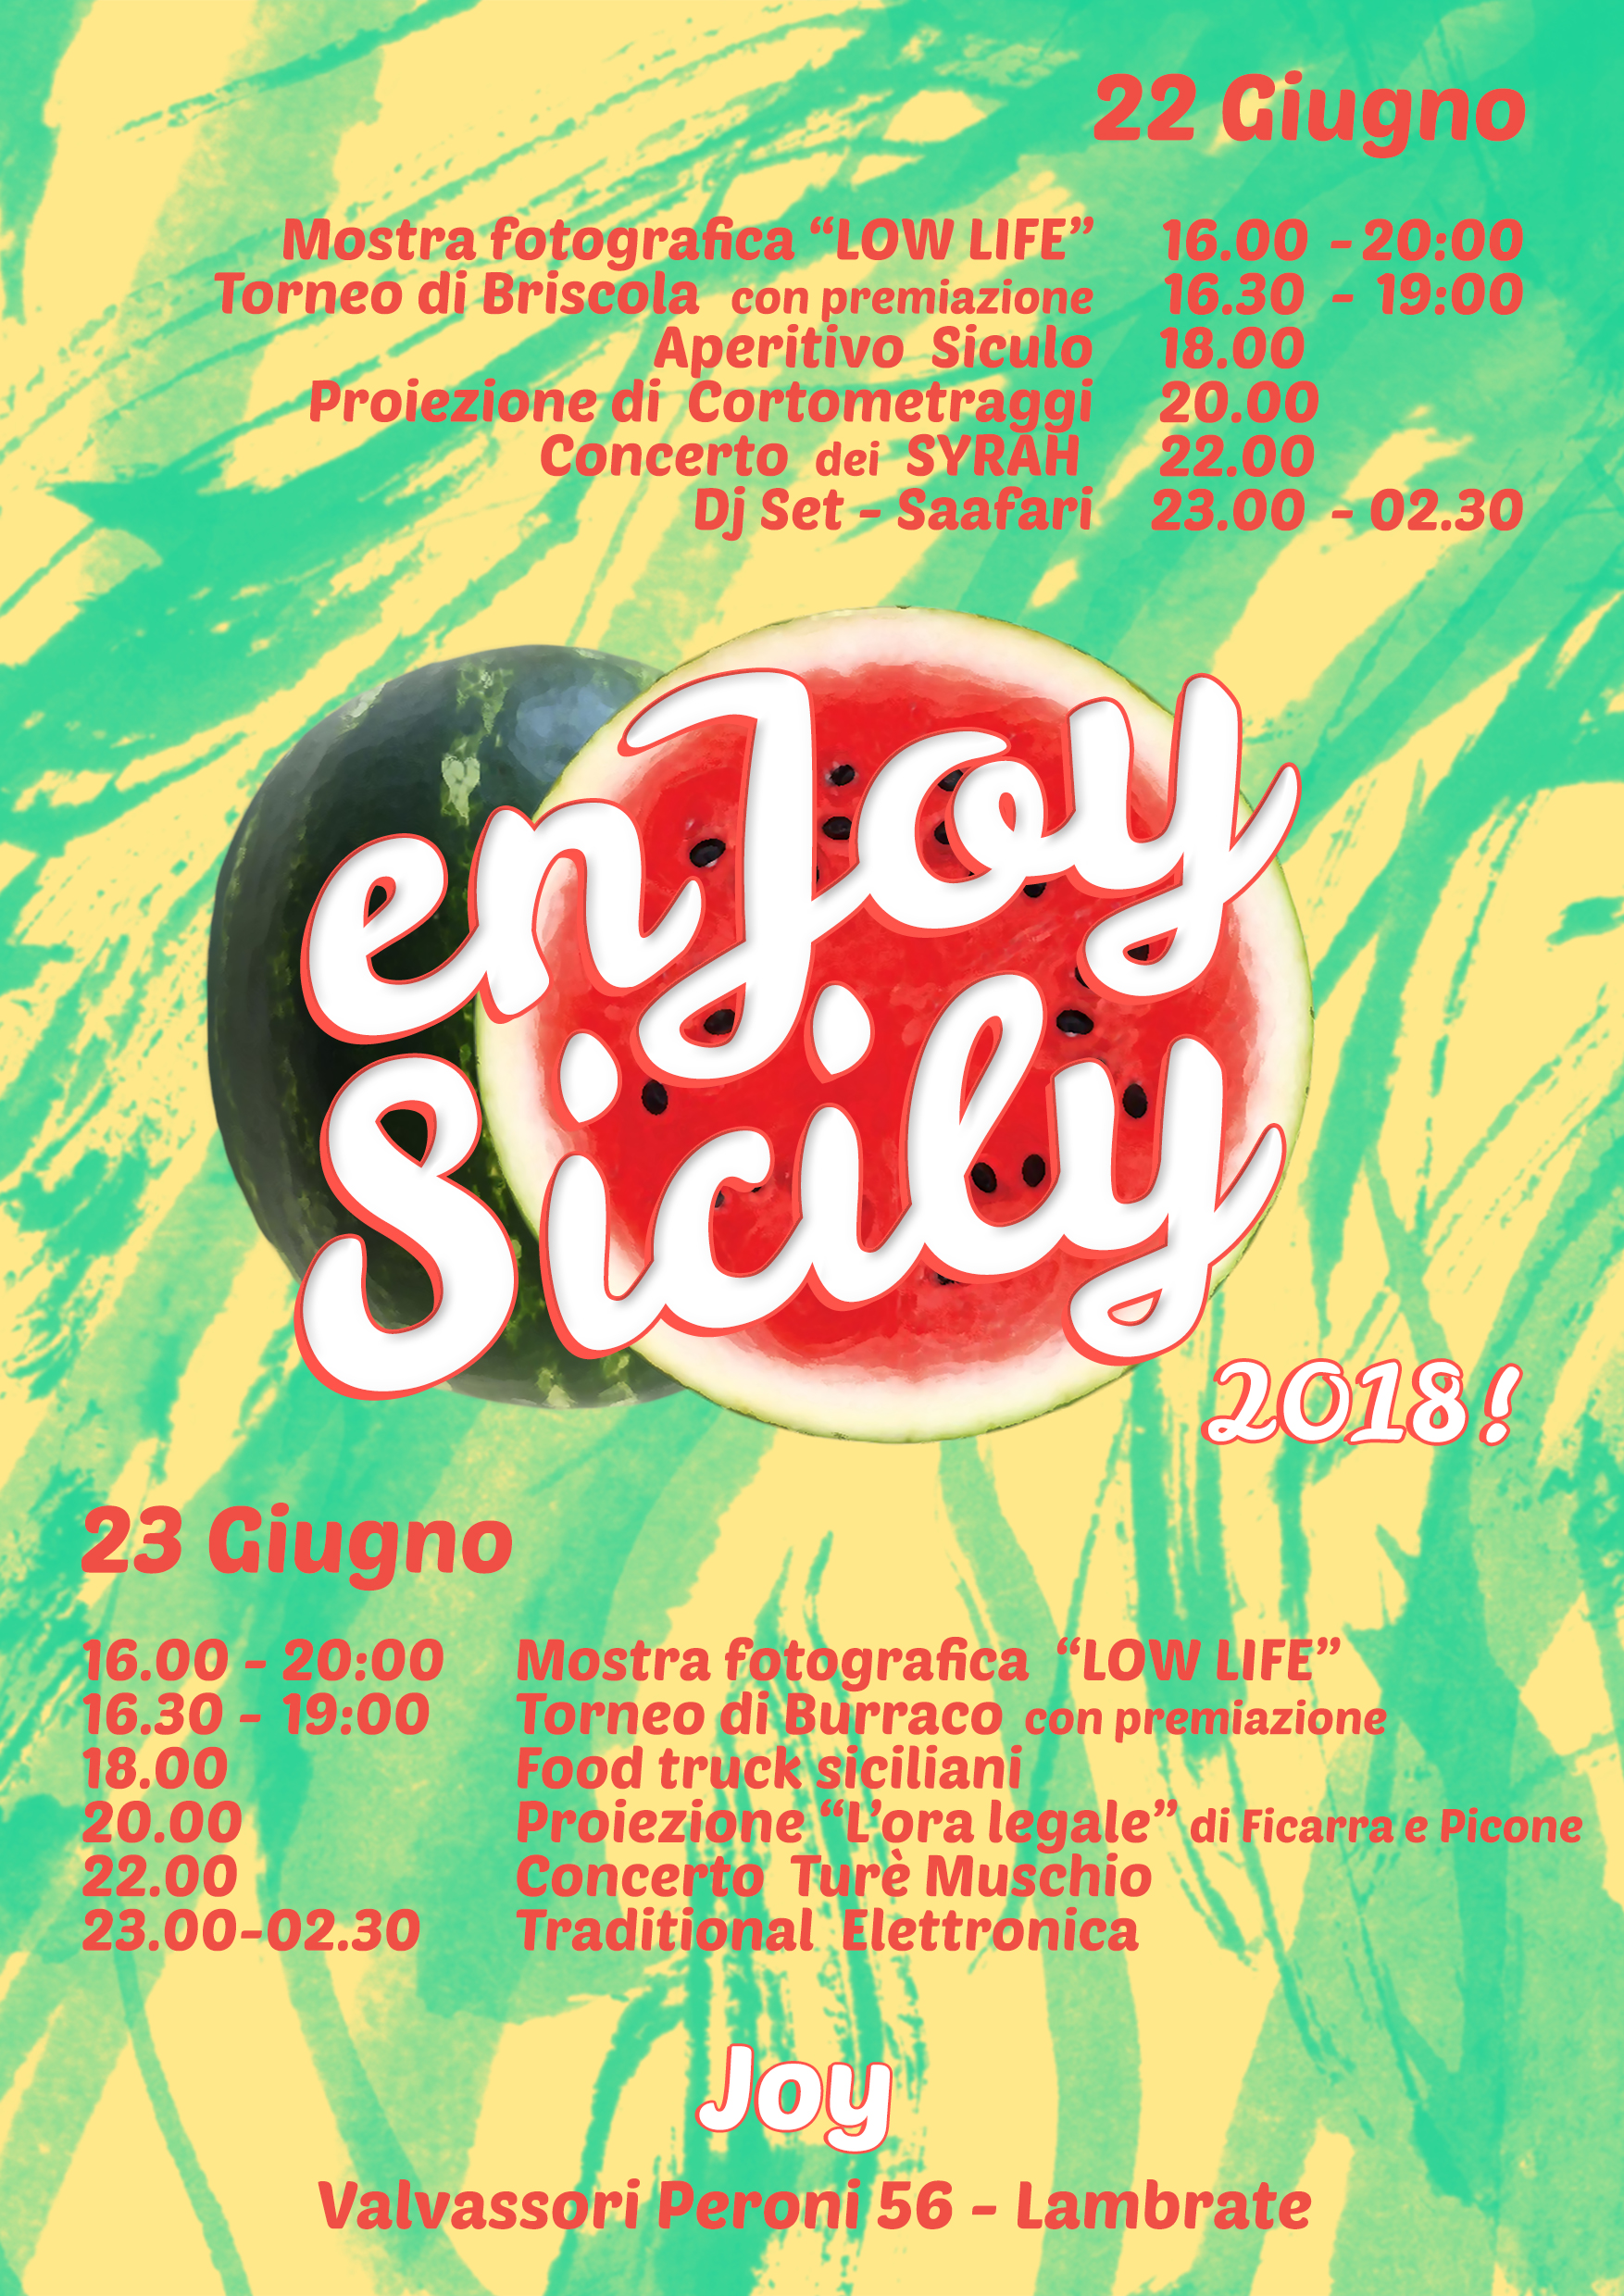 EnJoy Sicily... venerdì 22 e sabato 23 giugno, al Joy di Milano, due giorni interi dedicati alla Sicilia...